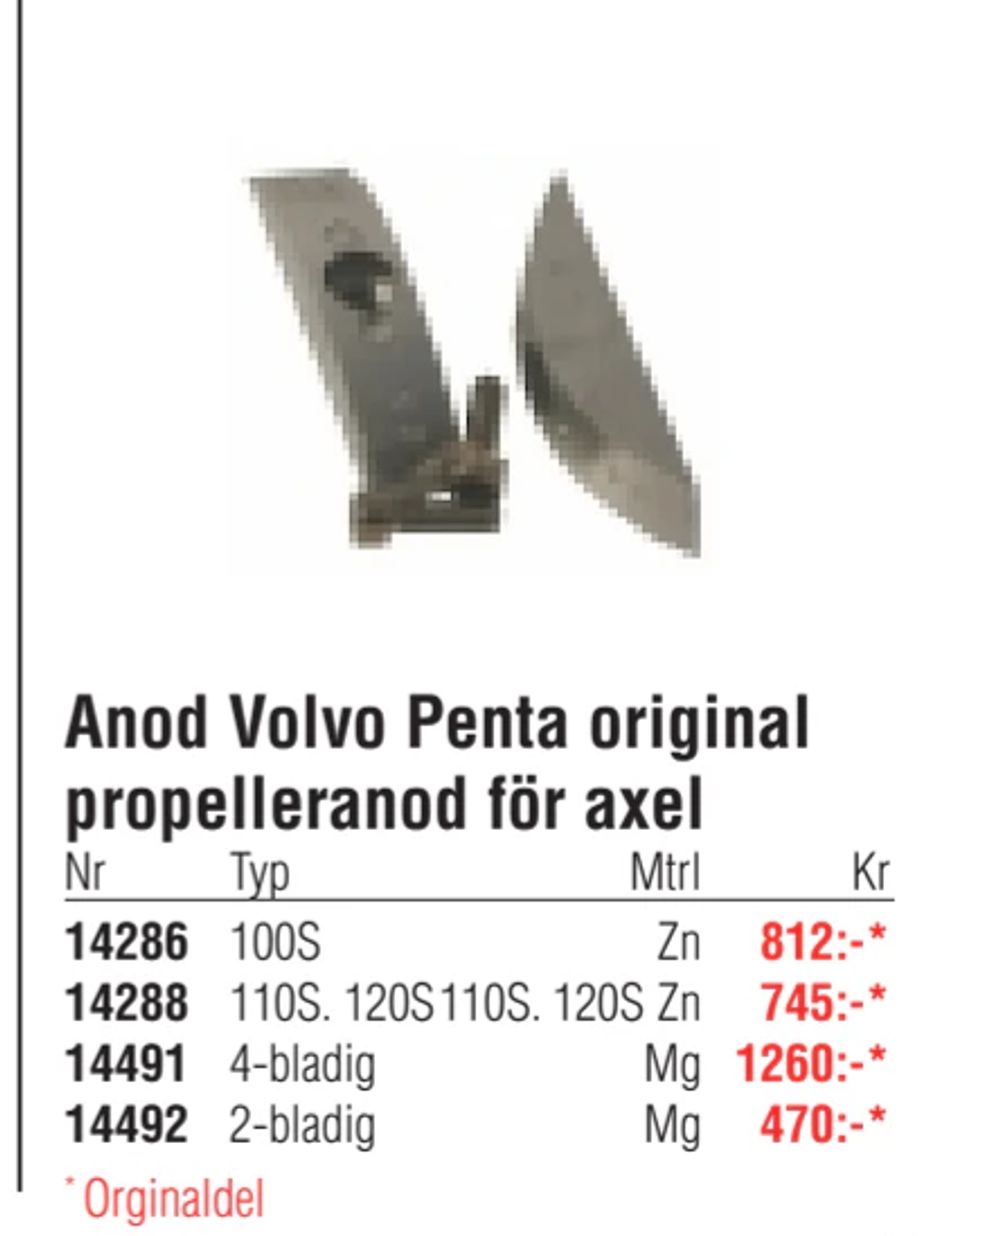 Erbjudanden på Anod Volvo Penta original propelleranod för axel från Erlandsons Brygga för 470 kr